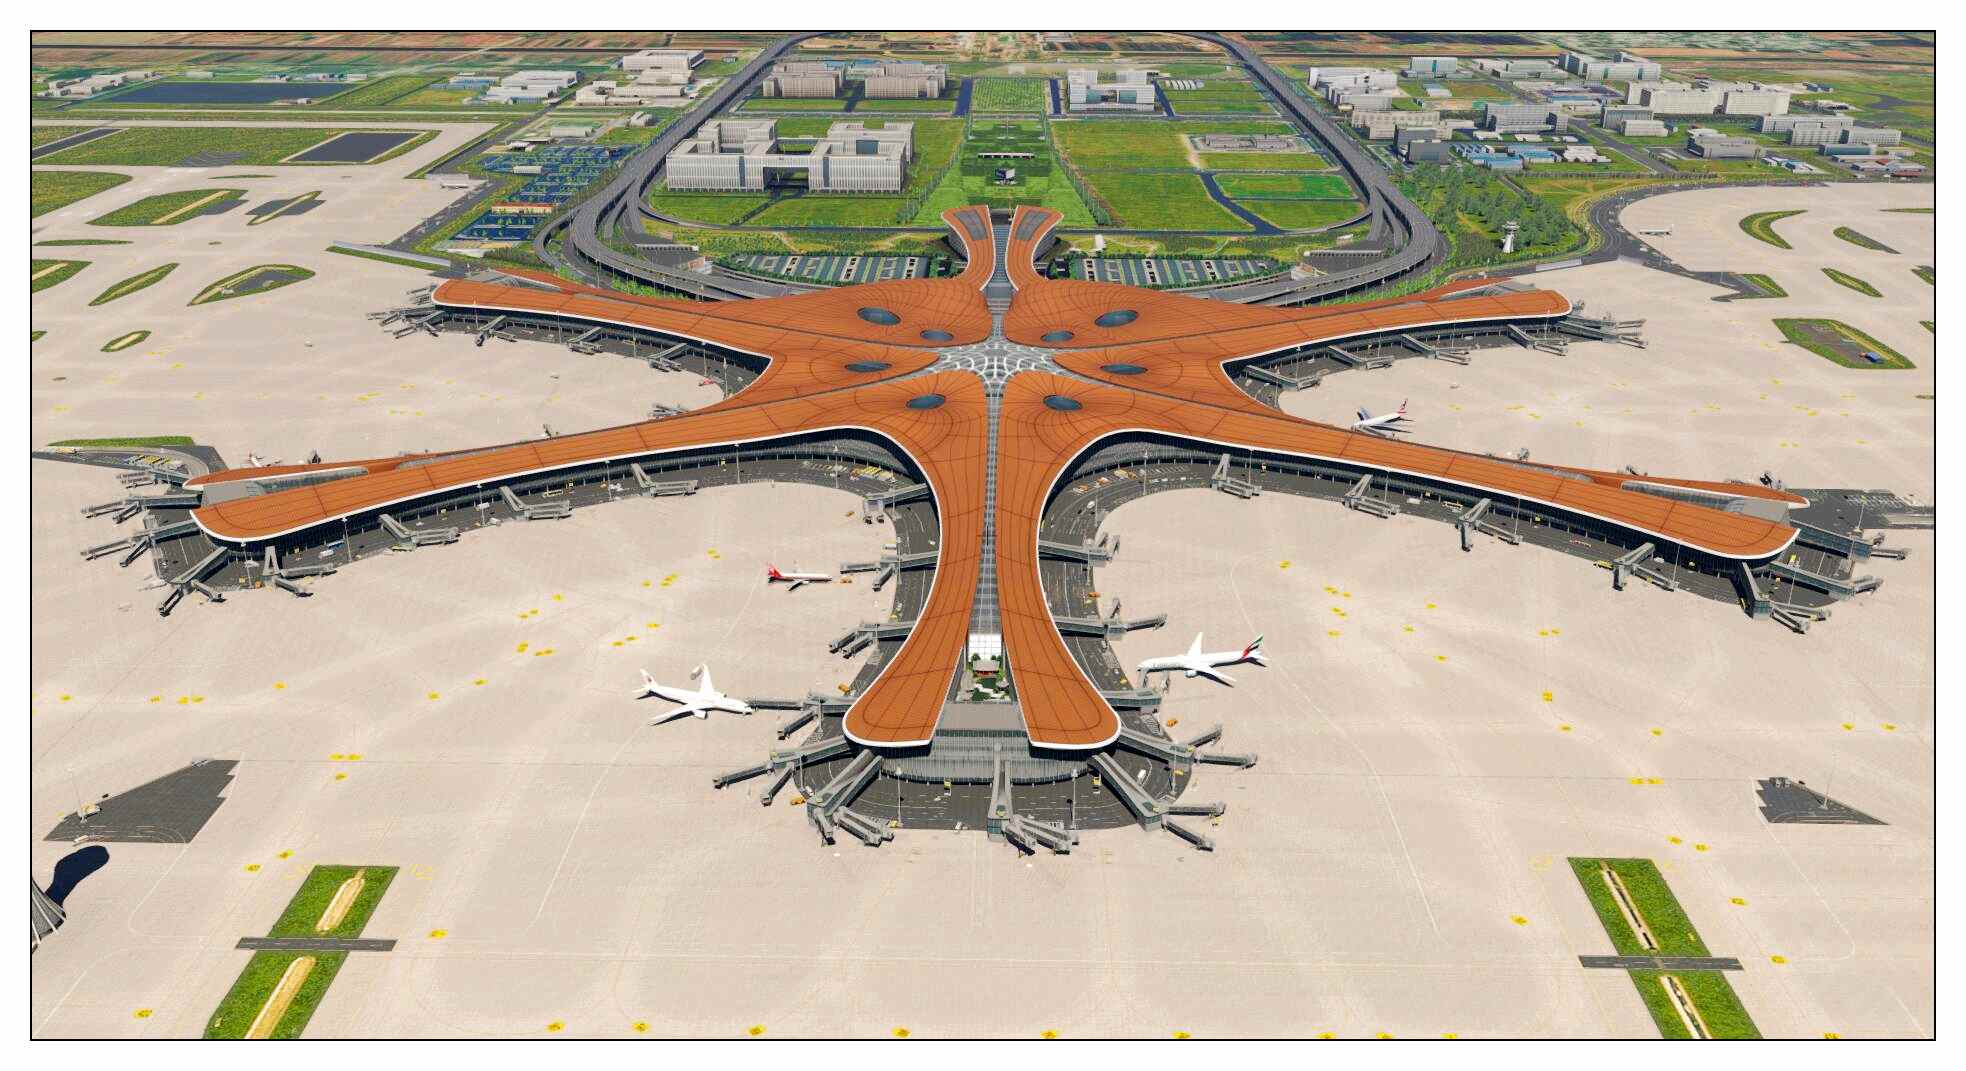 【X-Plane】ZBAD北京大兴国际机场-正式发布-8886 